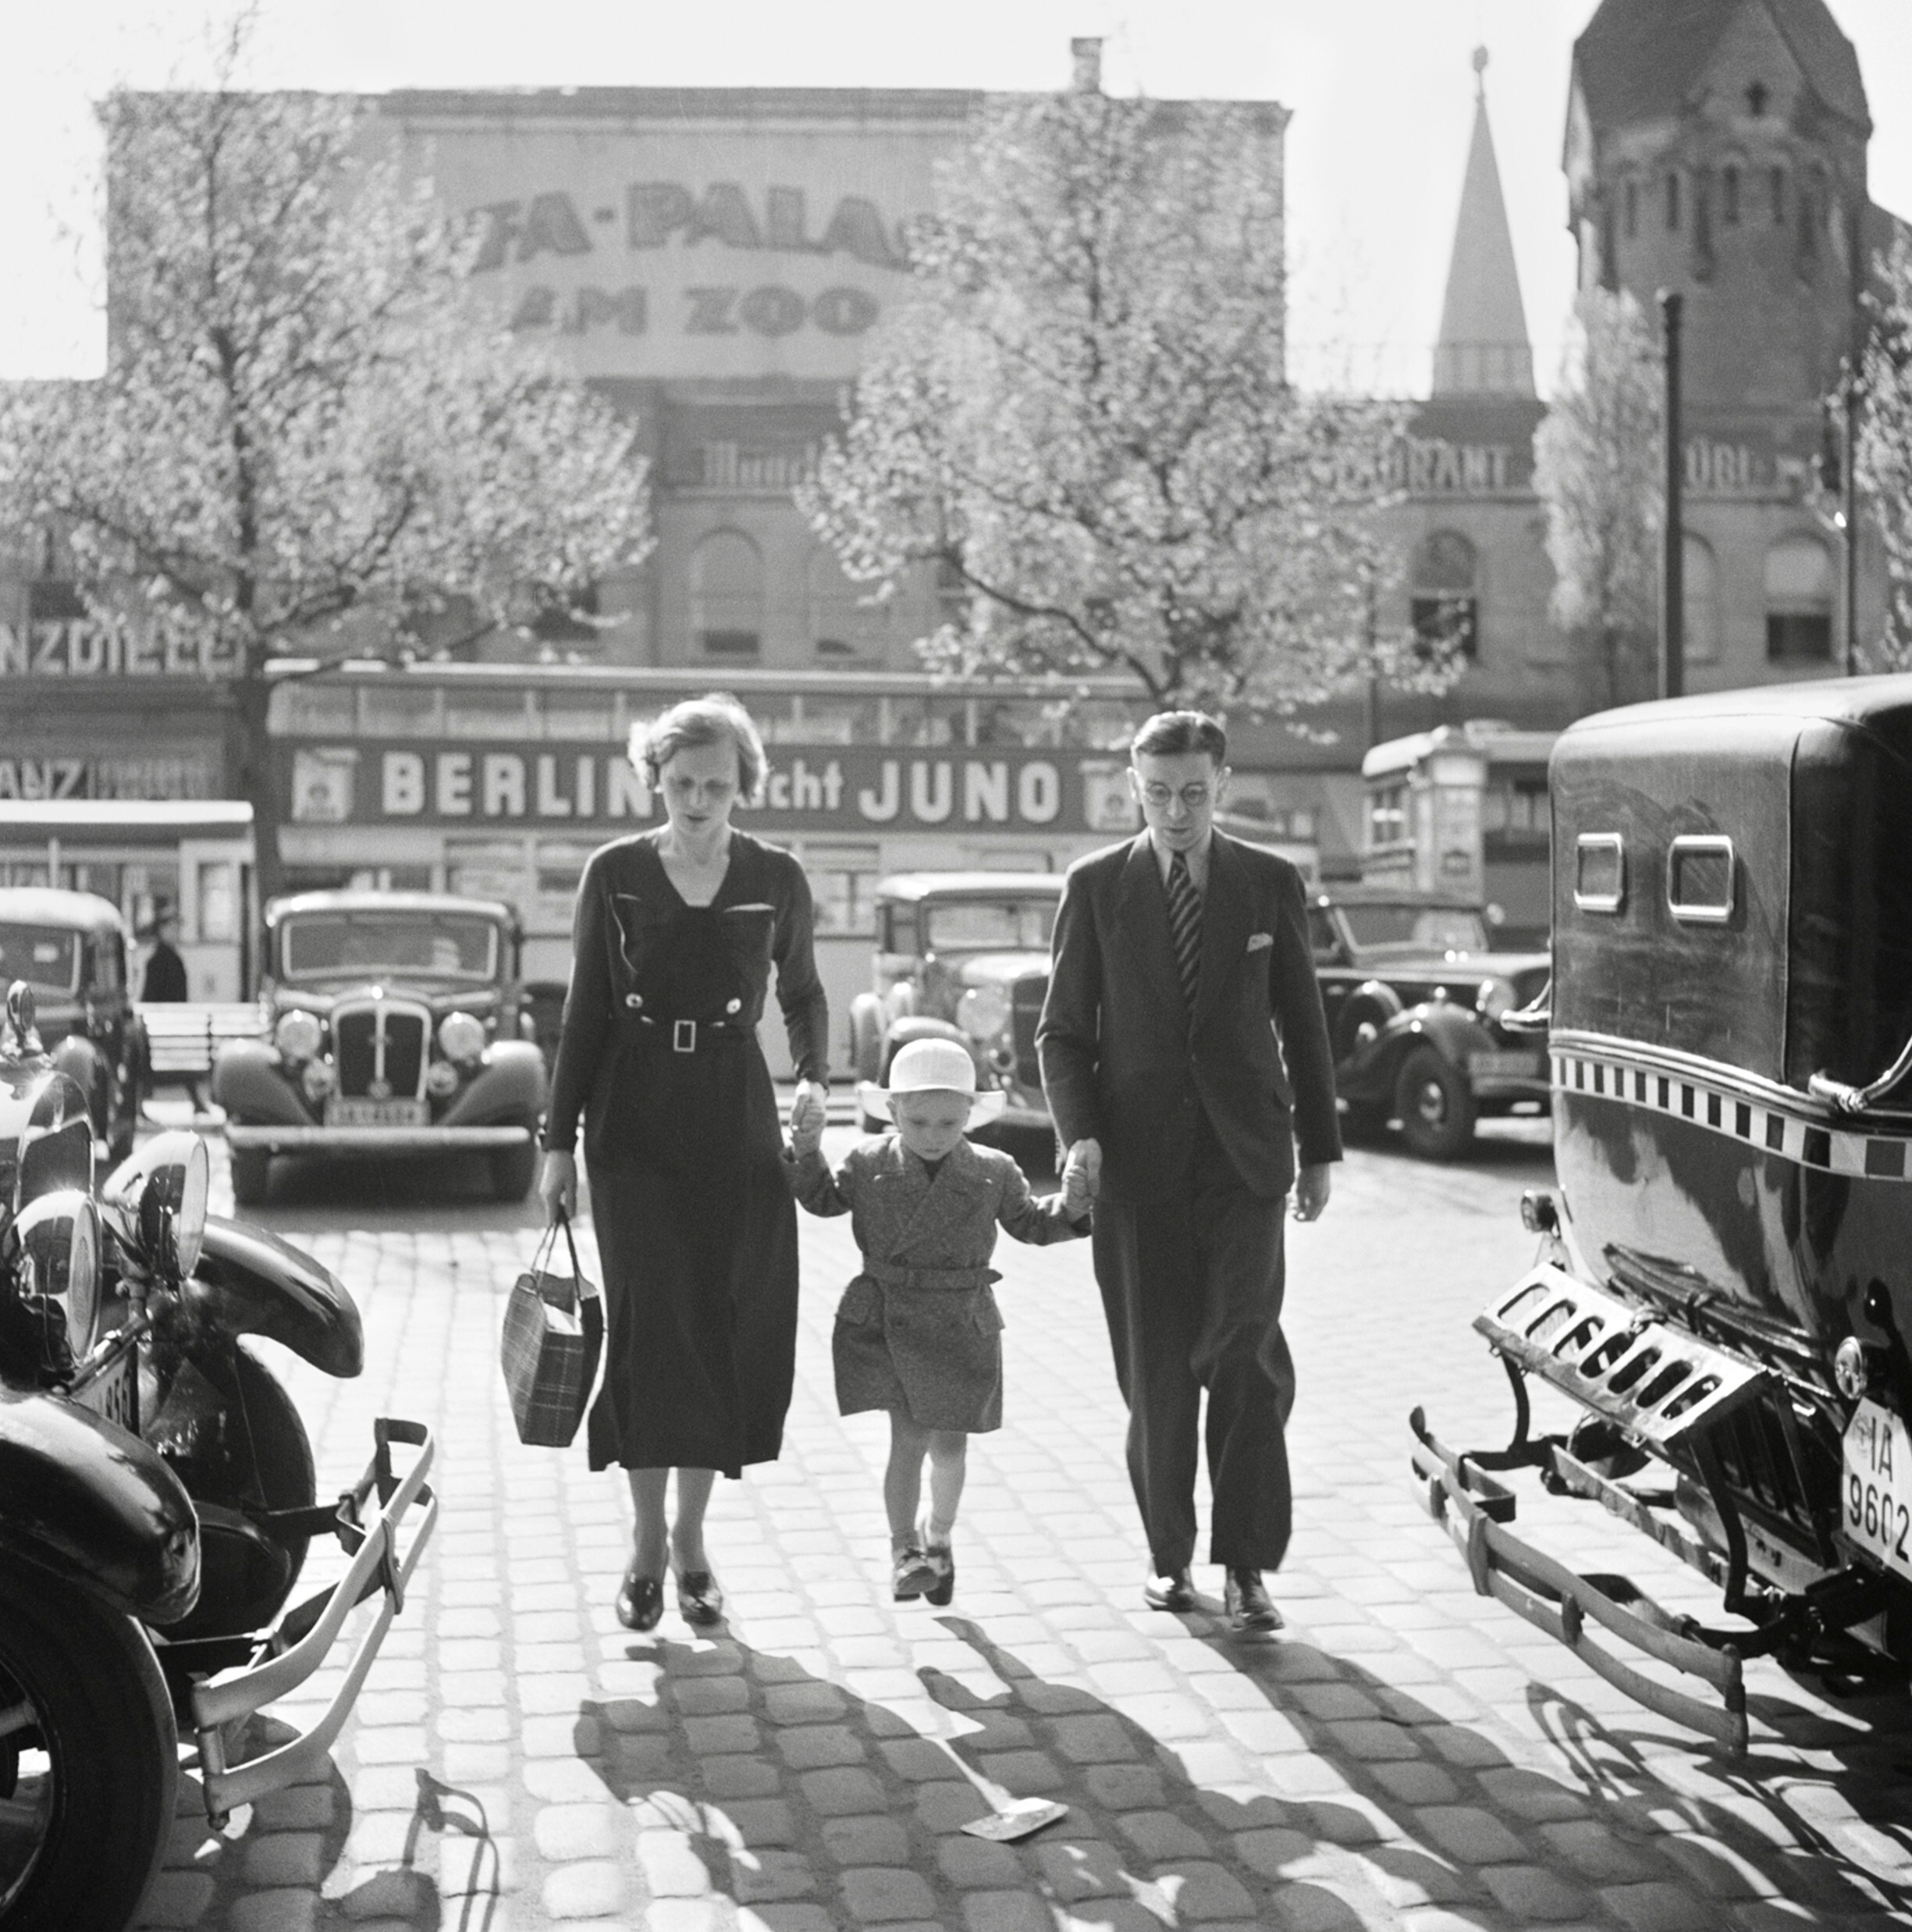 Немецкая семья идет между такси перед кинотеатром Уфа-Палас, Берлин, 1929-начало 1930-х гг. Фотограф Роман Вишняк